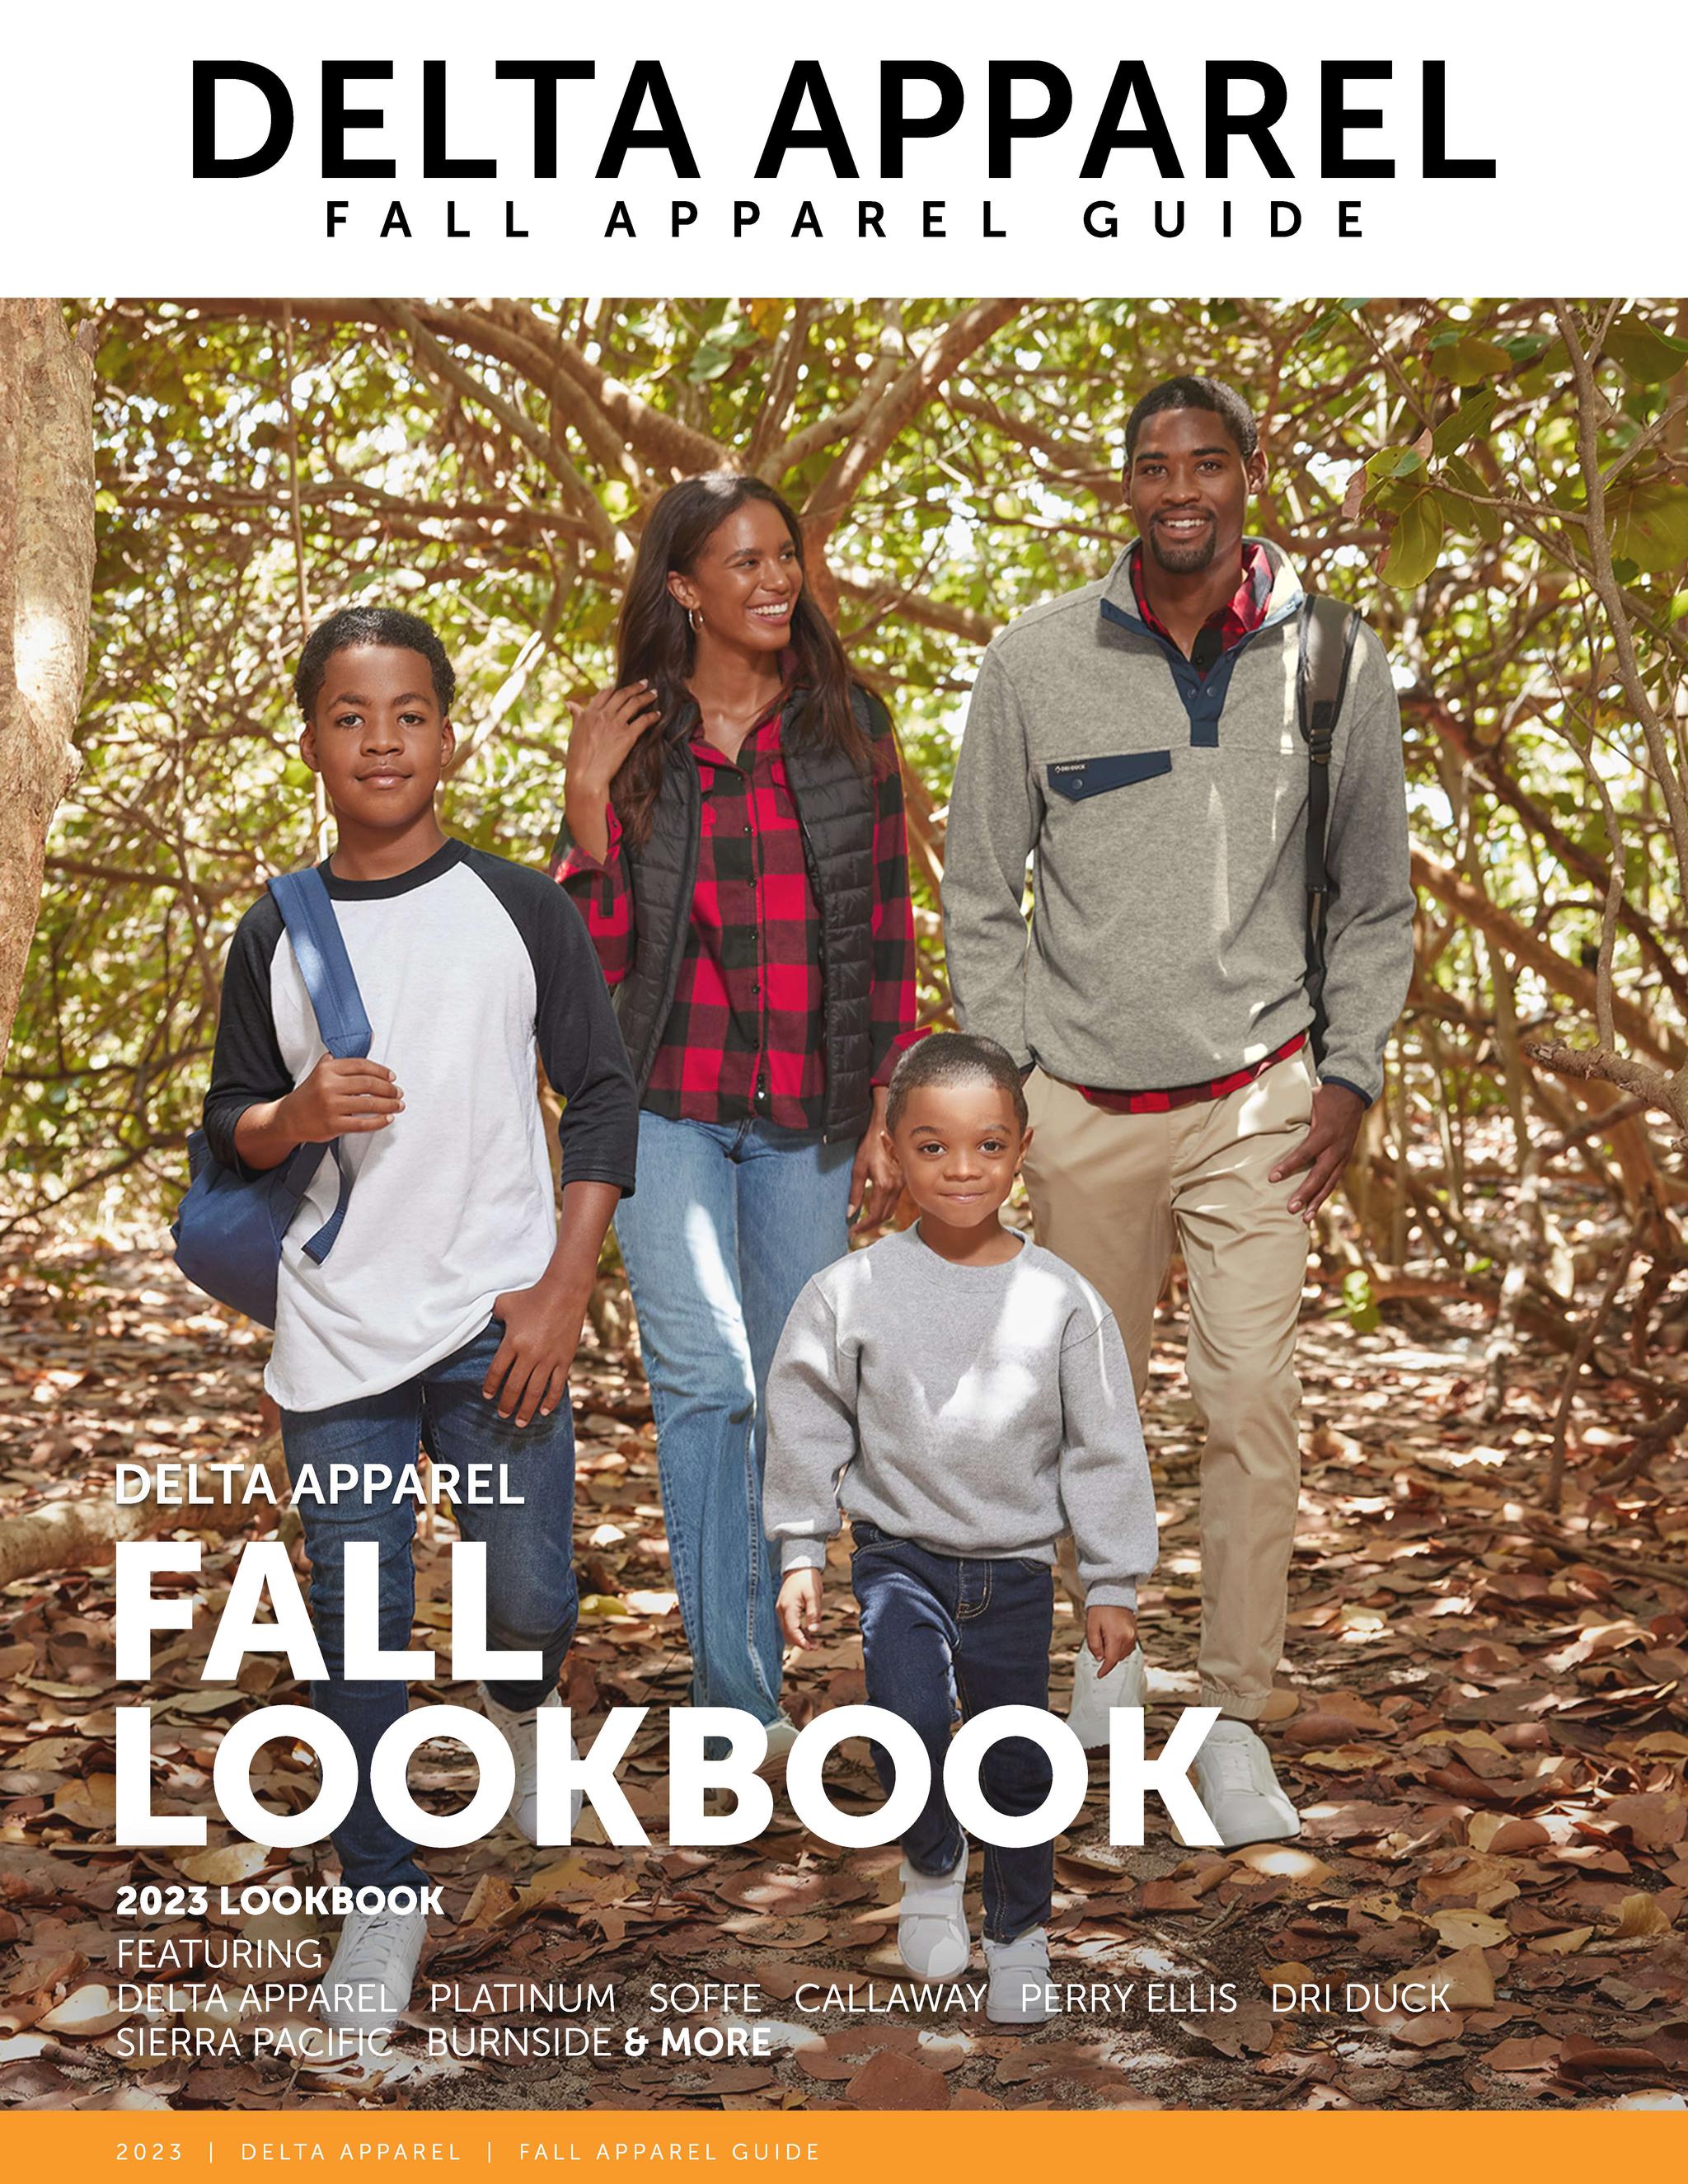 Fall Lookbook Guide